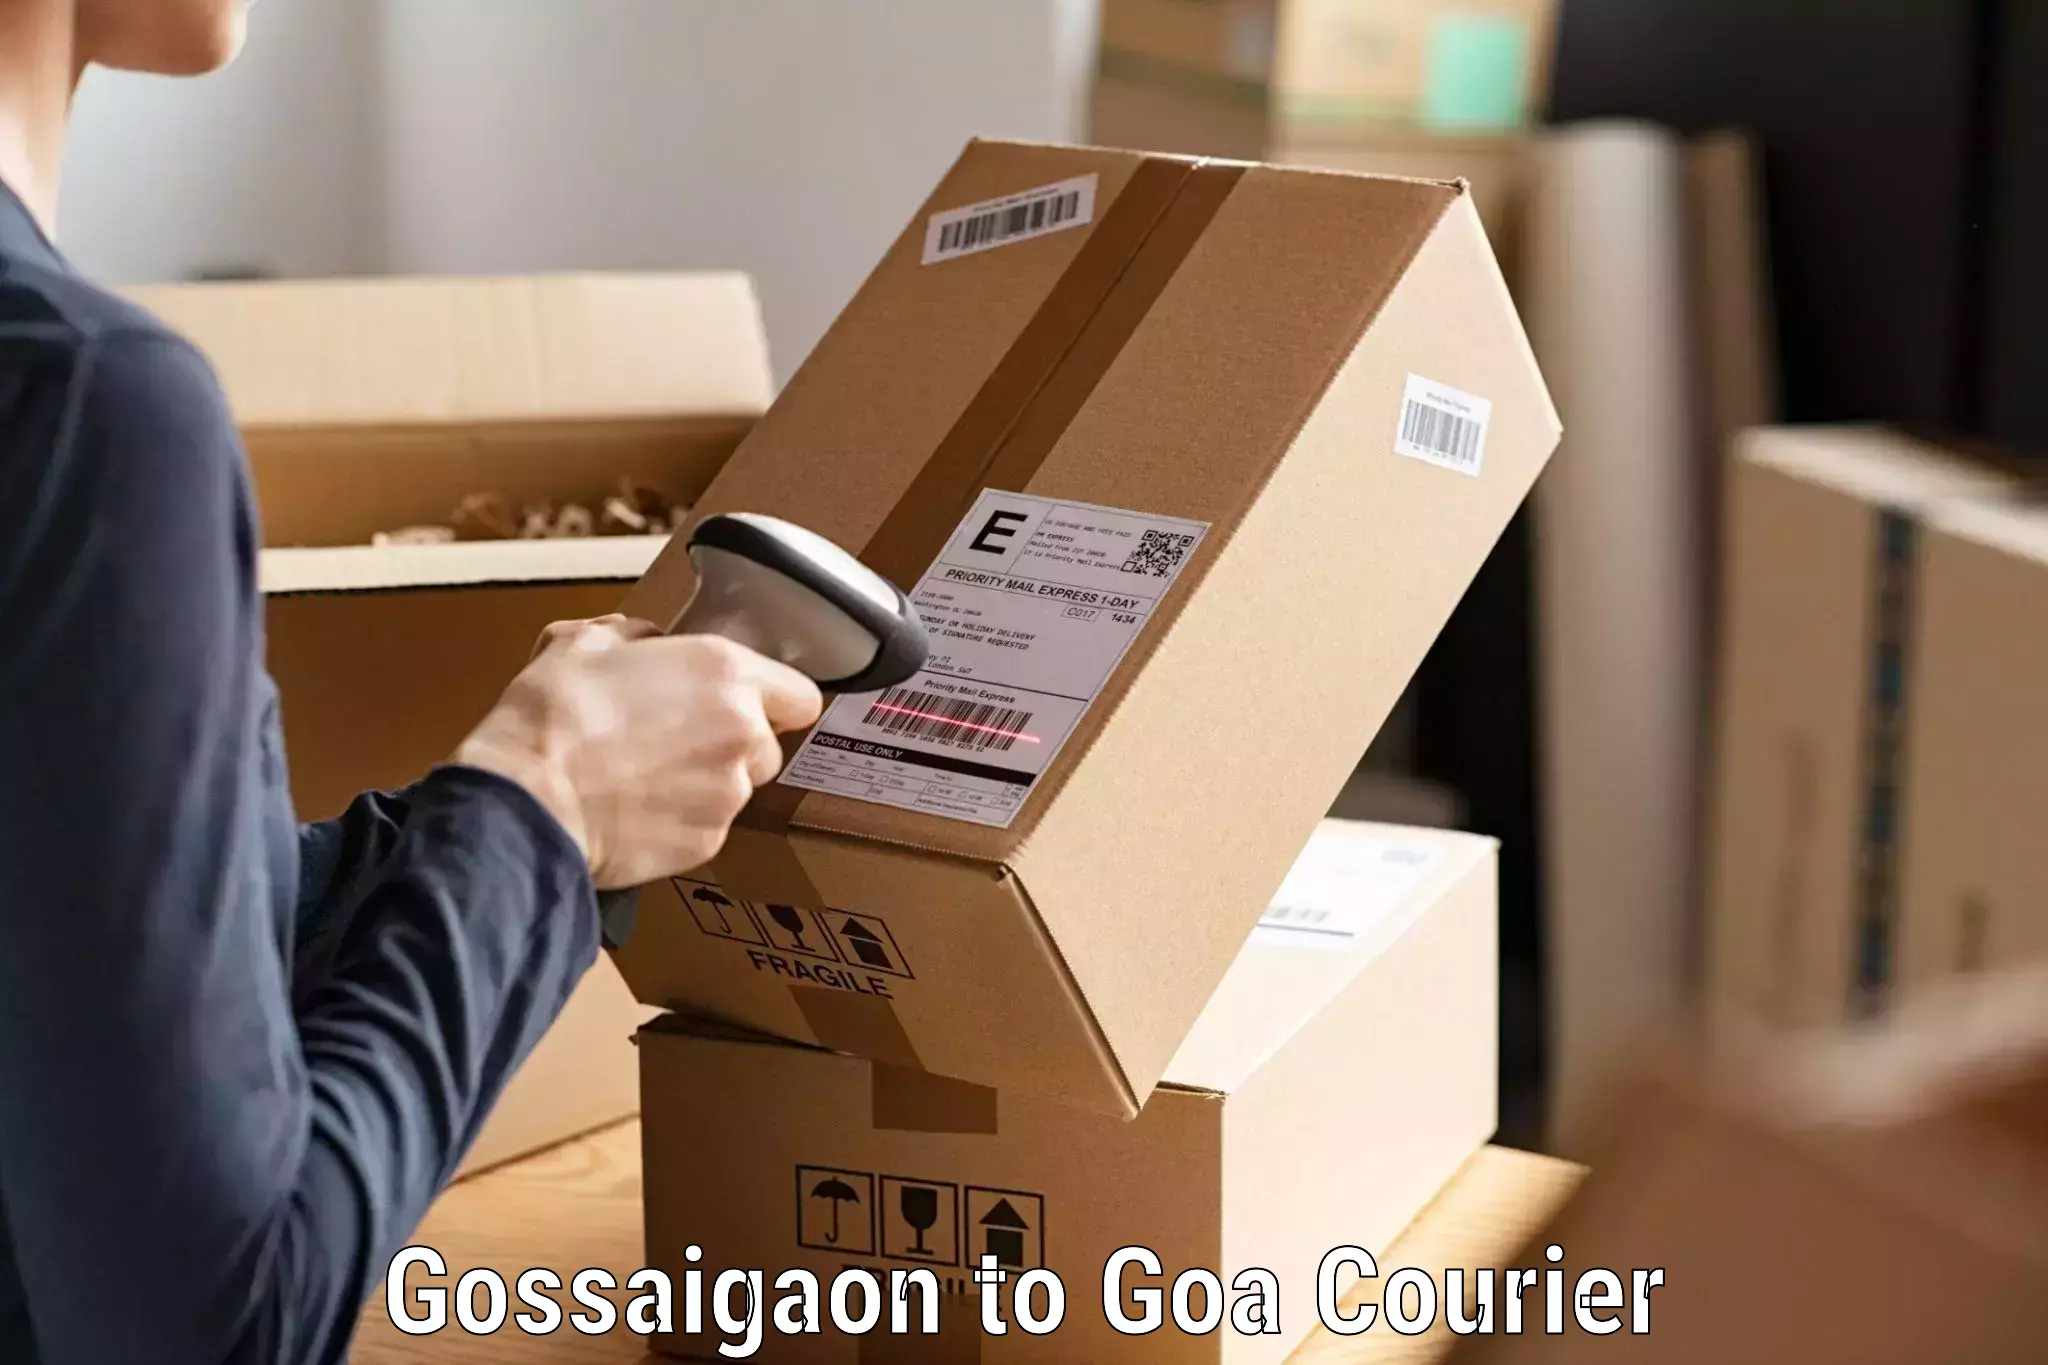 Custom courier packages Gossaigaon to Vasco da Gama